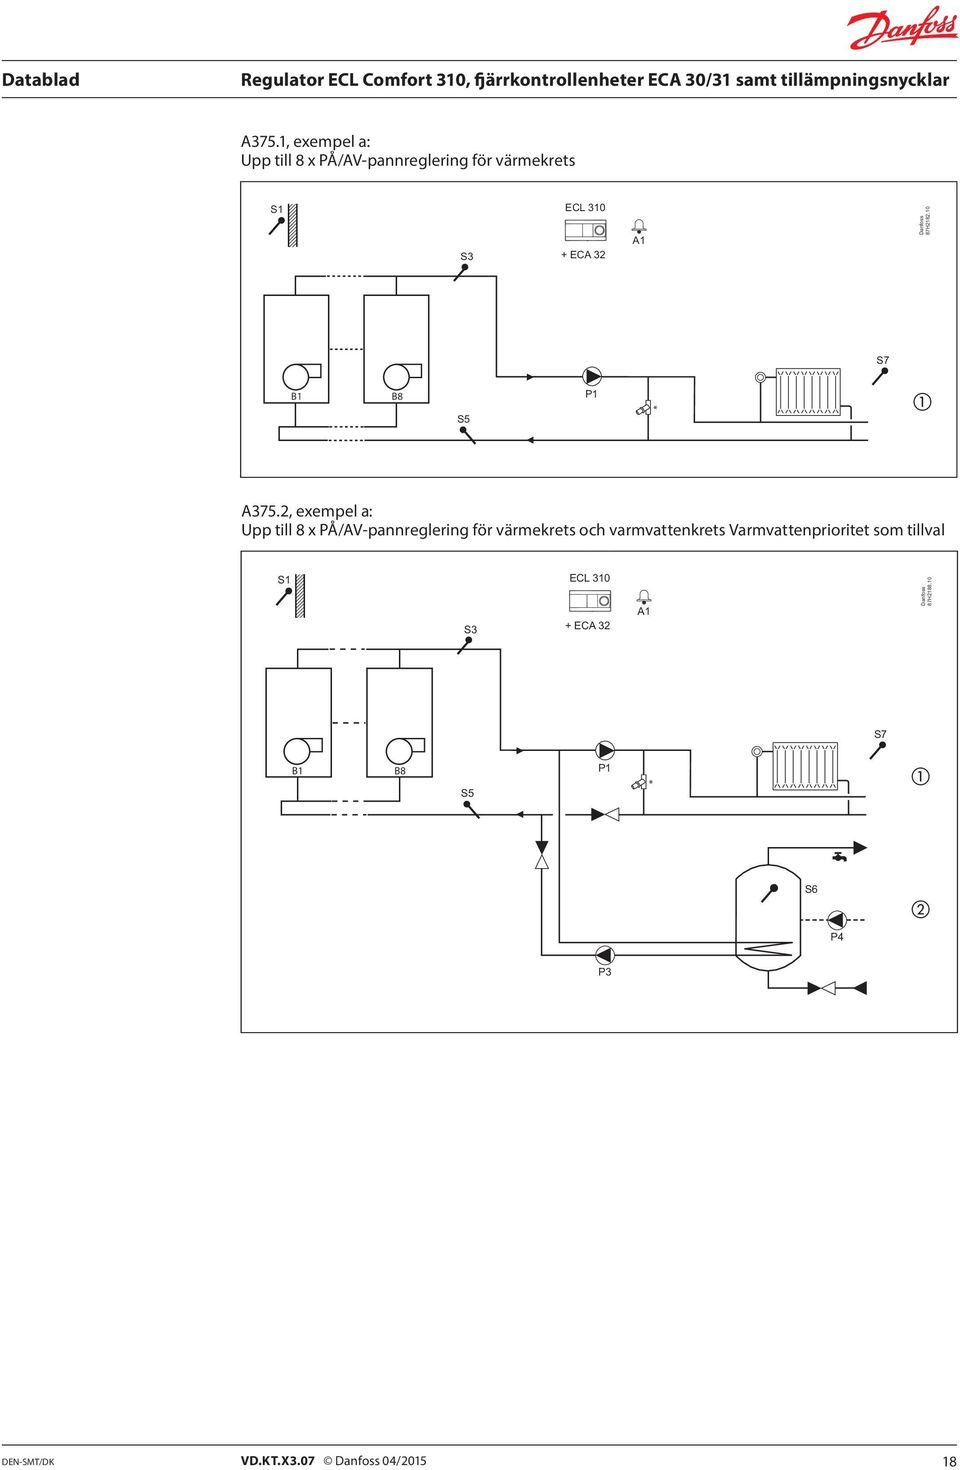 2, exempel a: Upp till 8 x PÅ/AV-pannreglering för värmekrets och